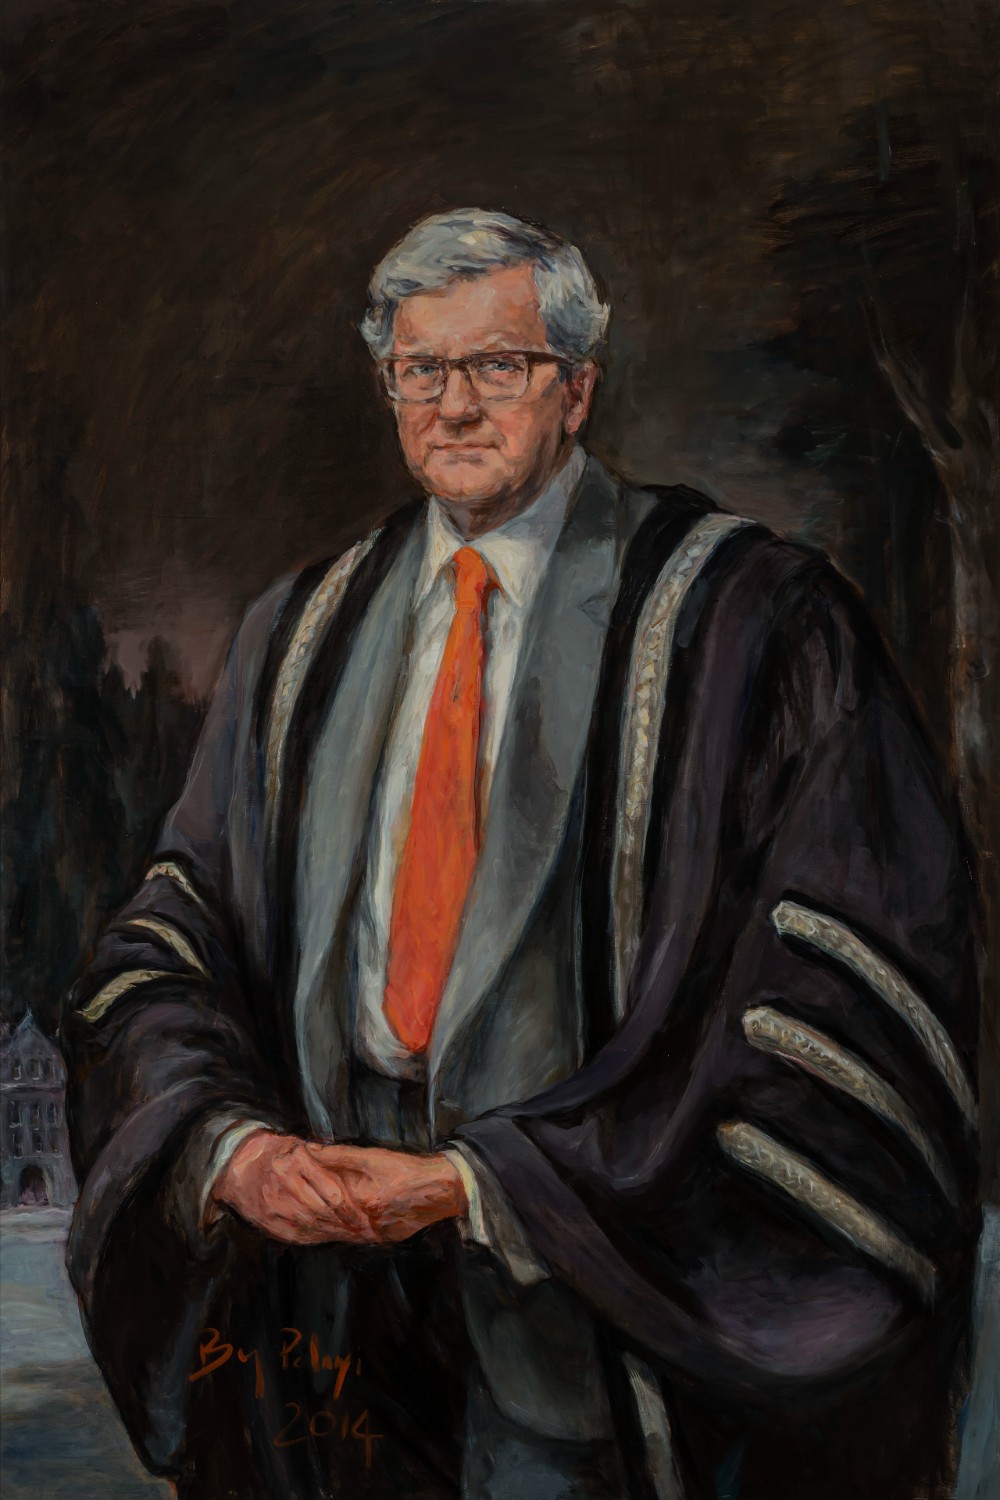 Portrait of Lloyd Axworthy by Brenda Bury